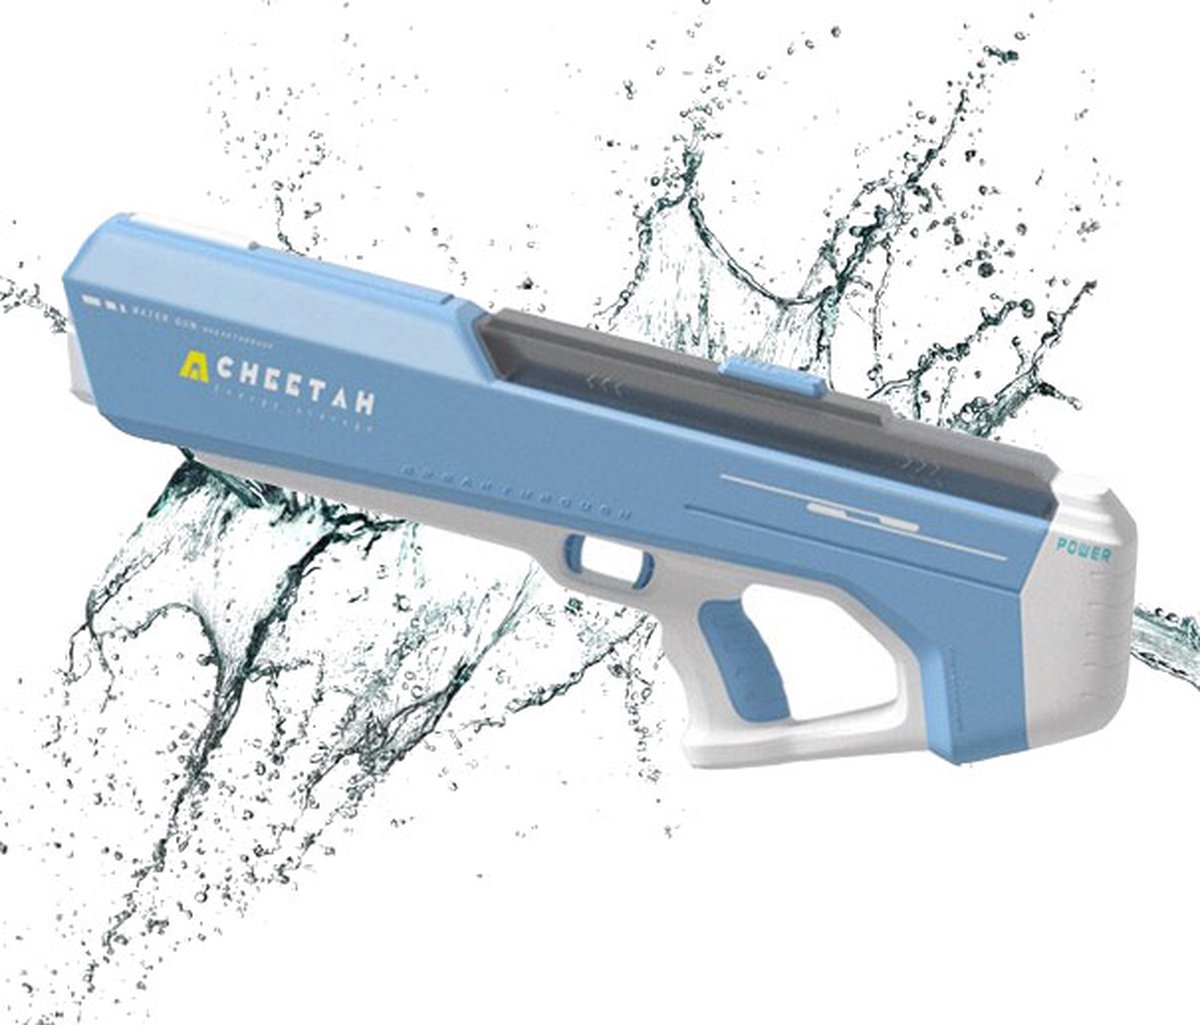 Pistolet à eau électrique automatique pour enfants, jouets à